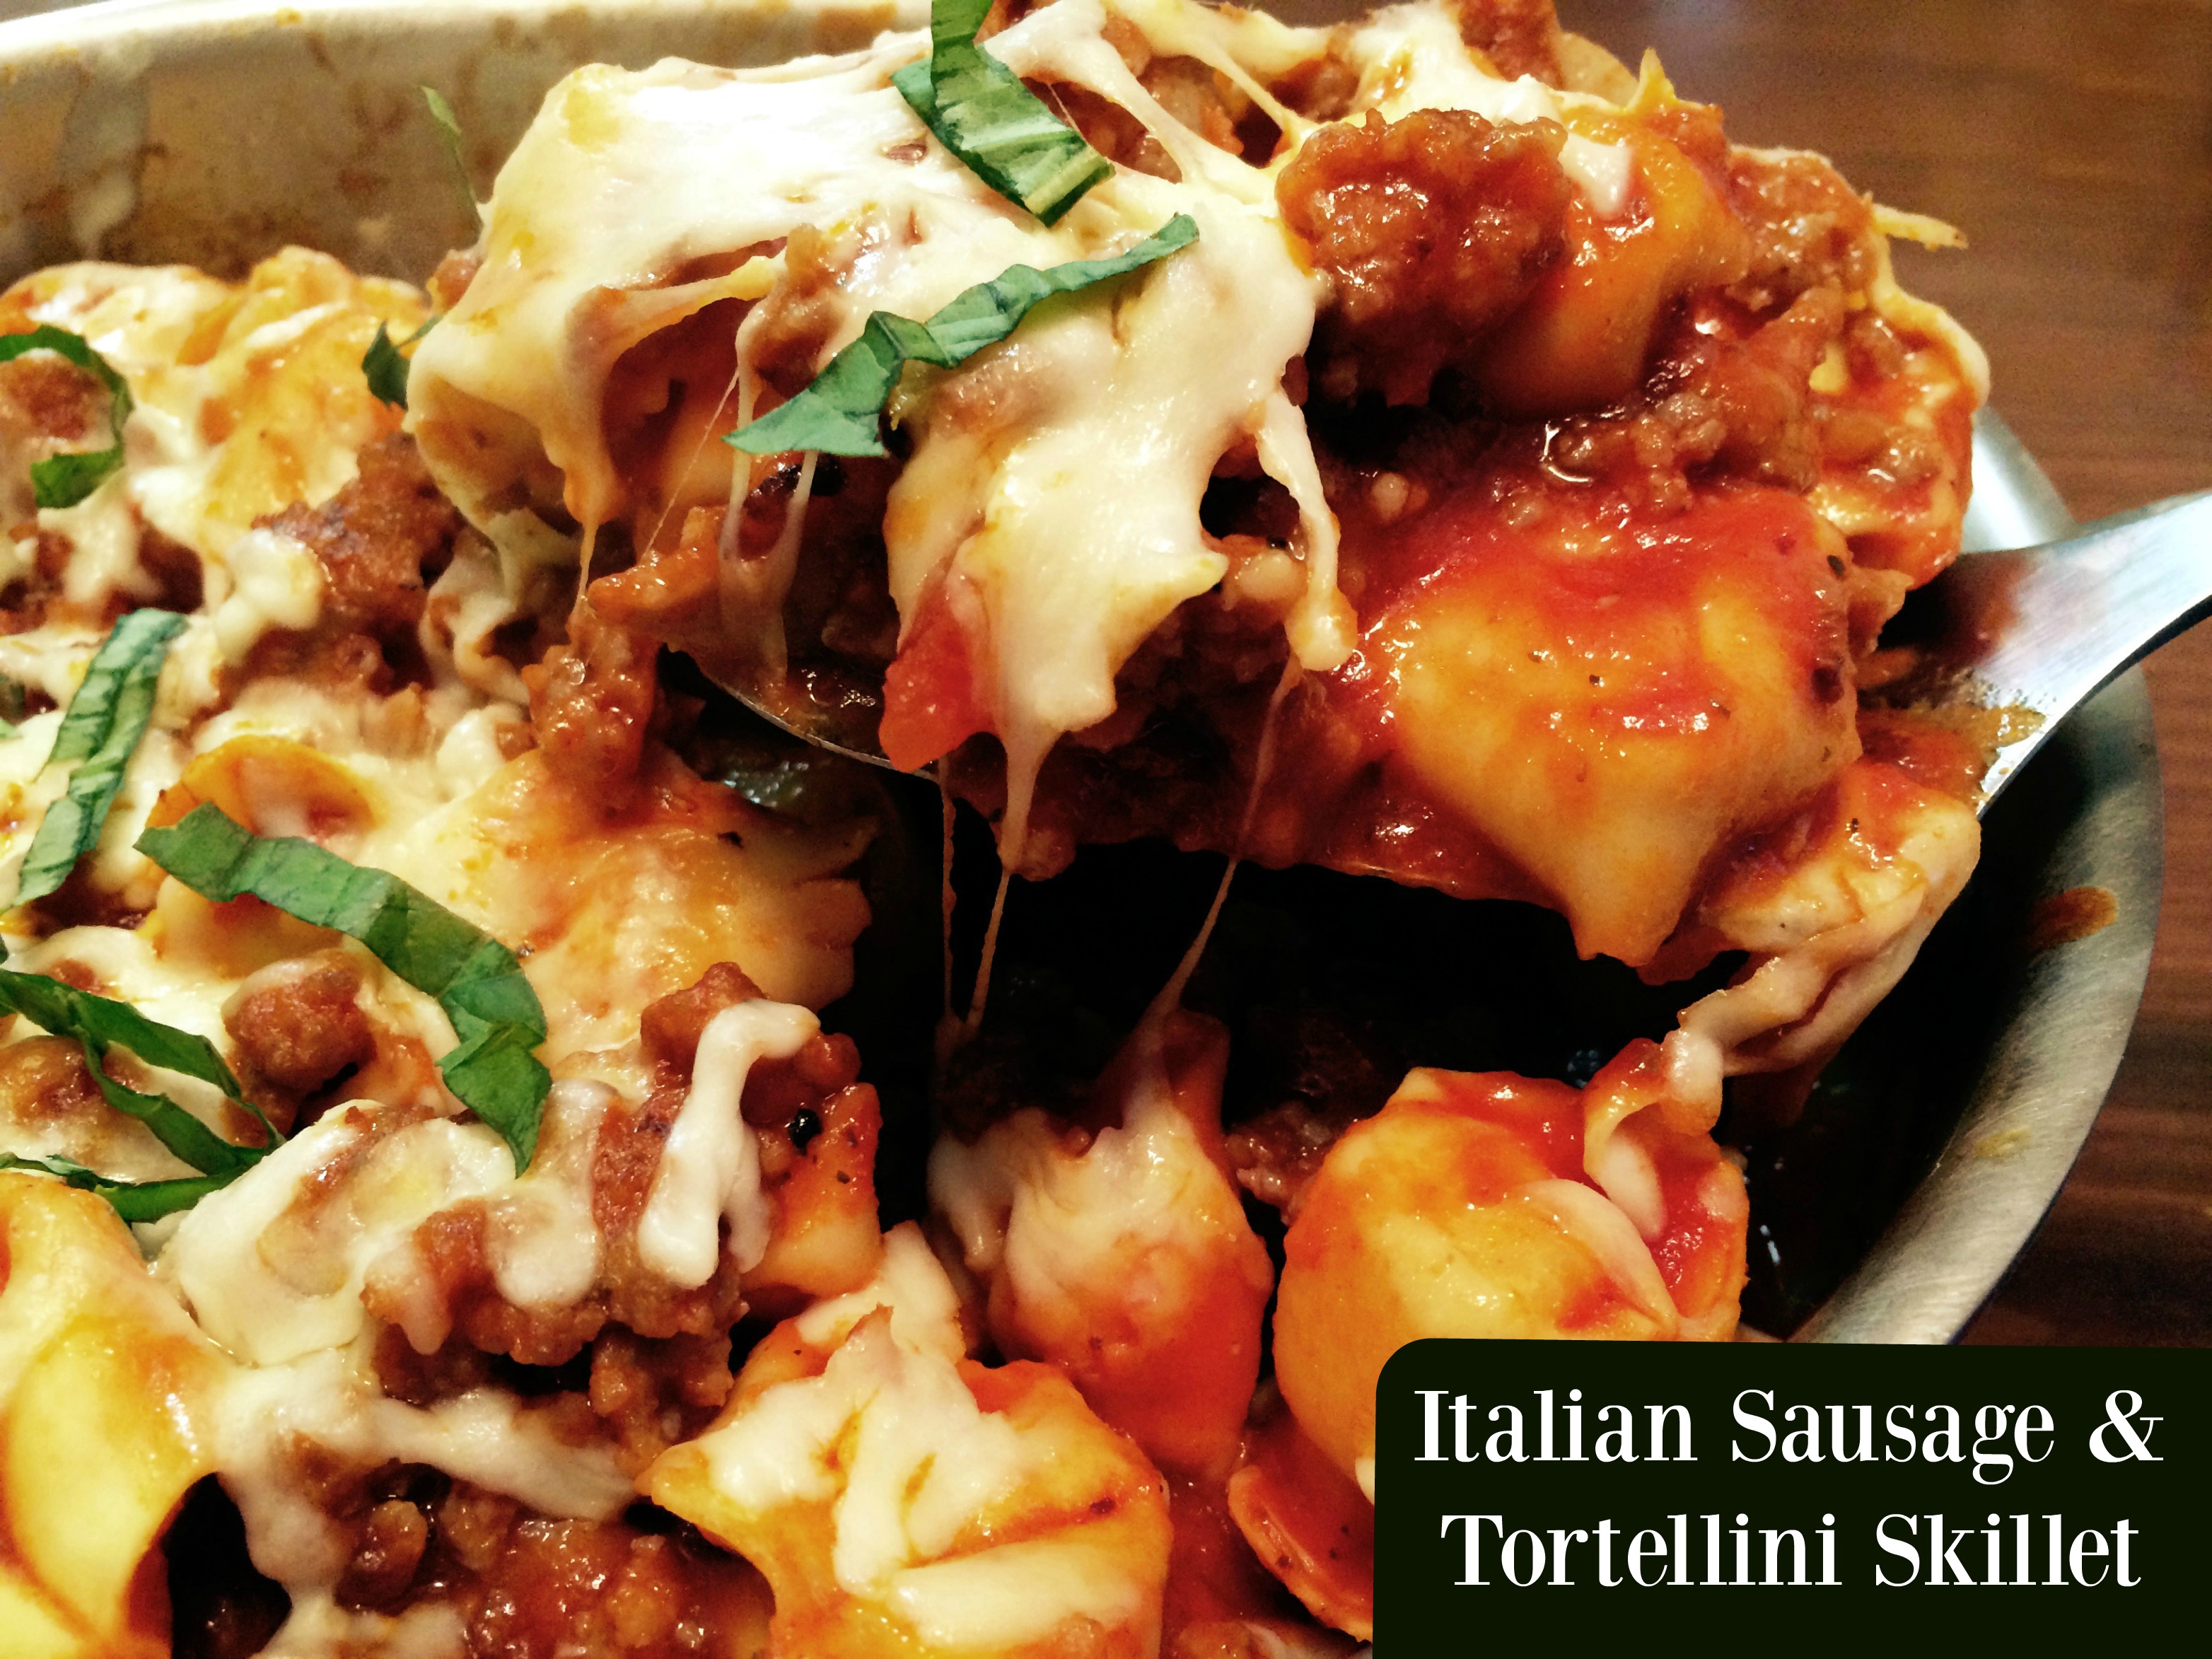 Italian Sausage & Tortellini Skillet